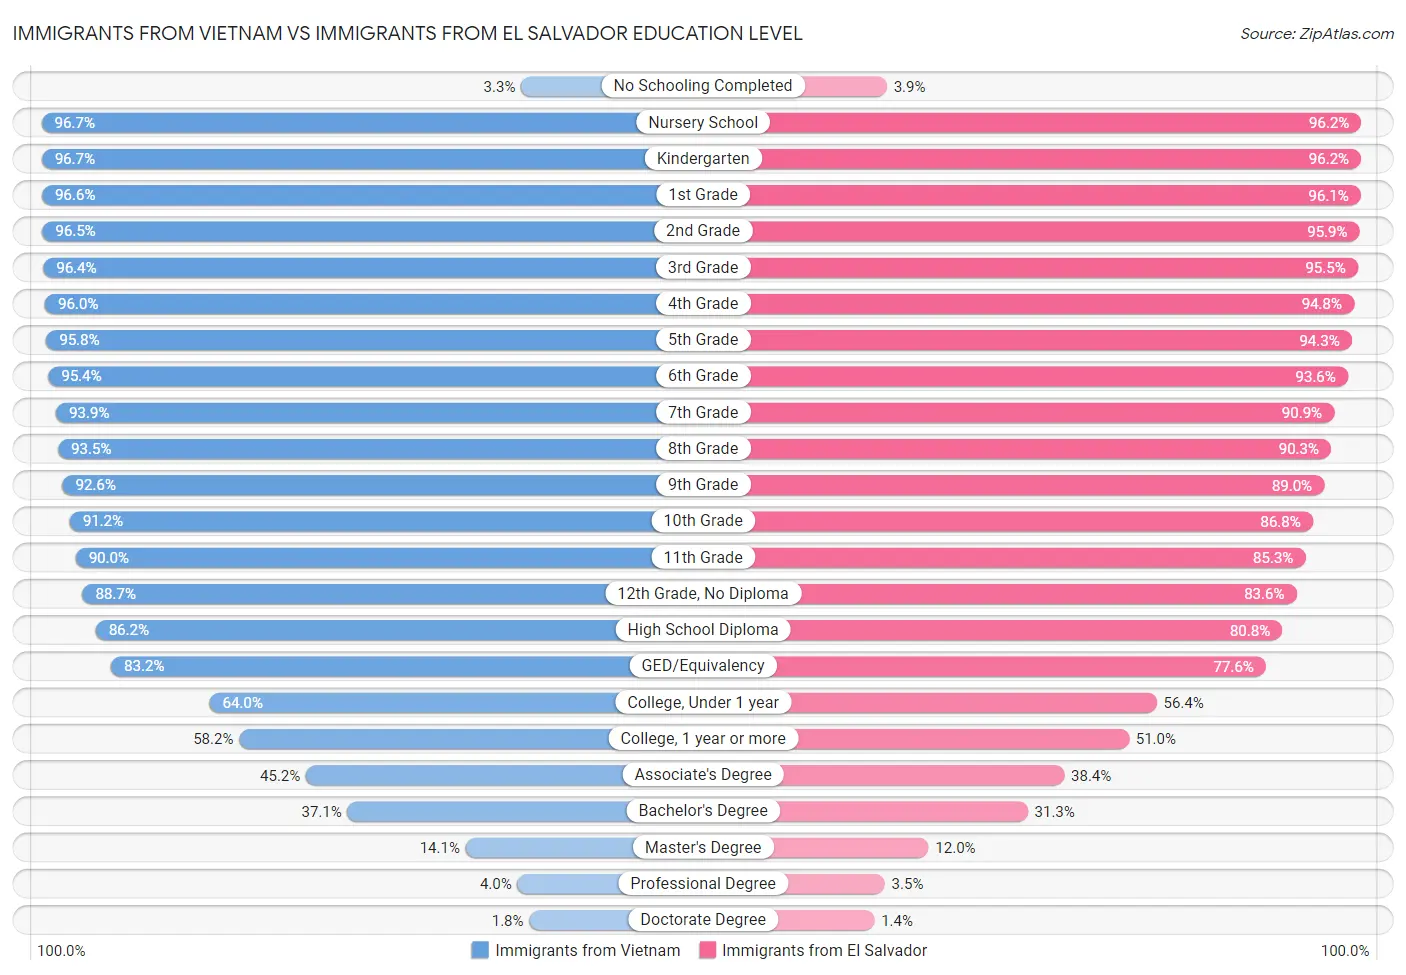 Immigrants from Vietnam vs Immigrants from El Salvador Education Level